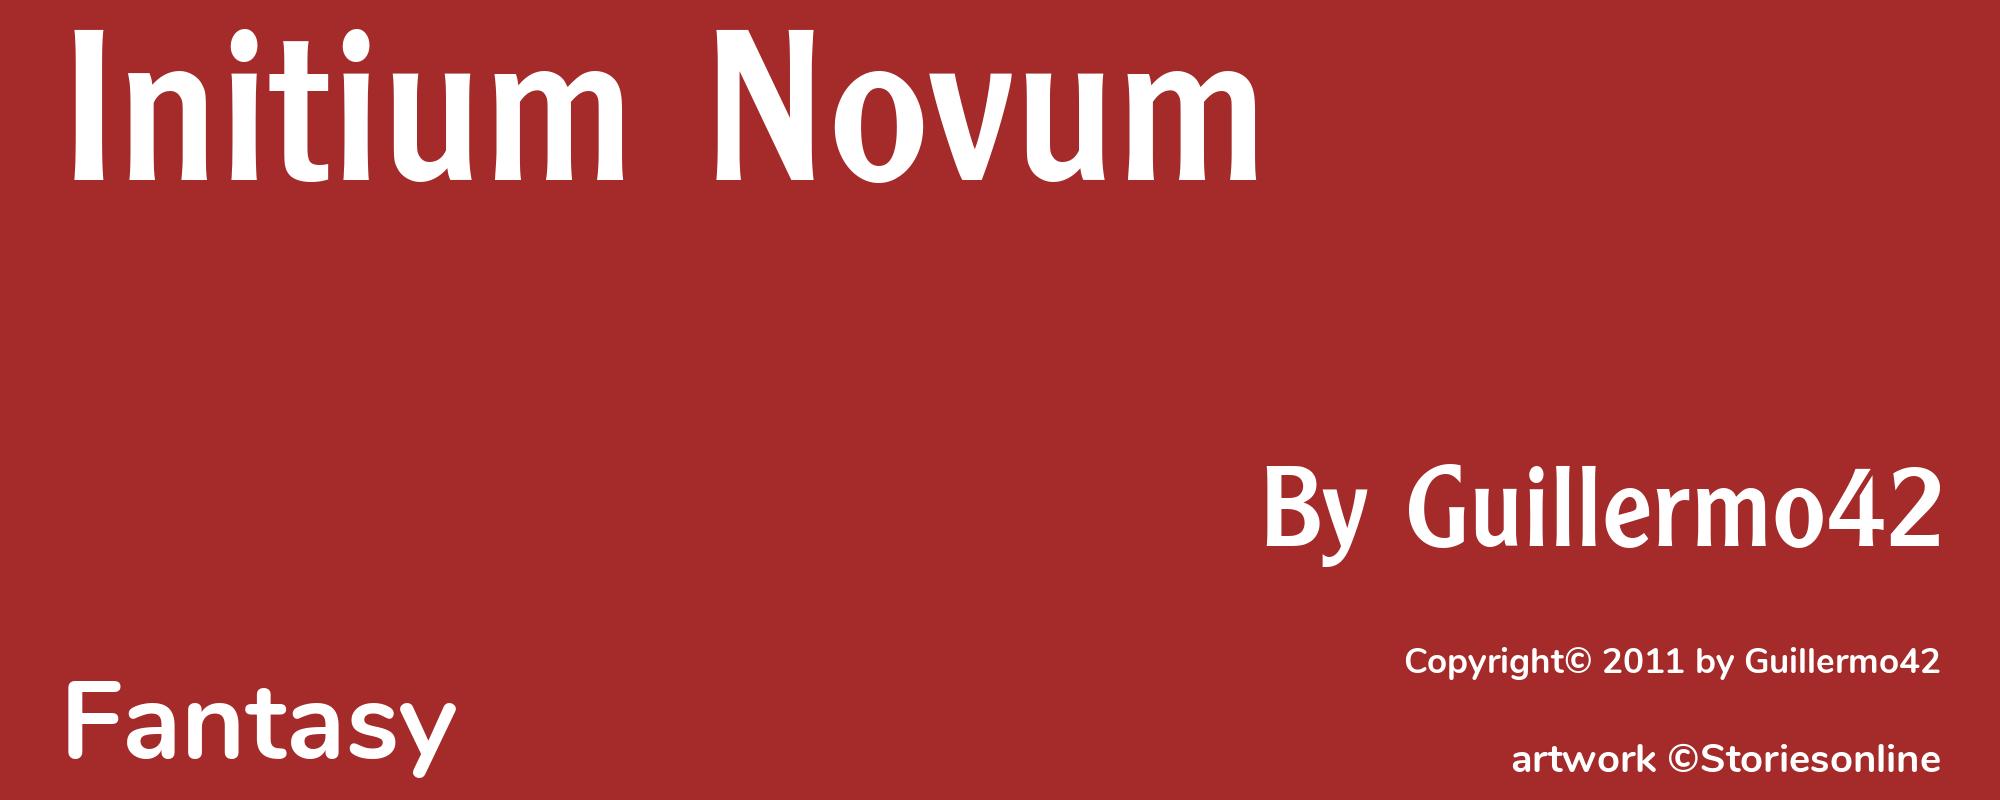 Initium Novum - Cover